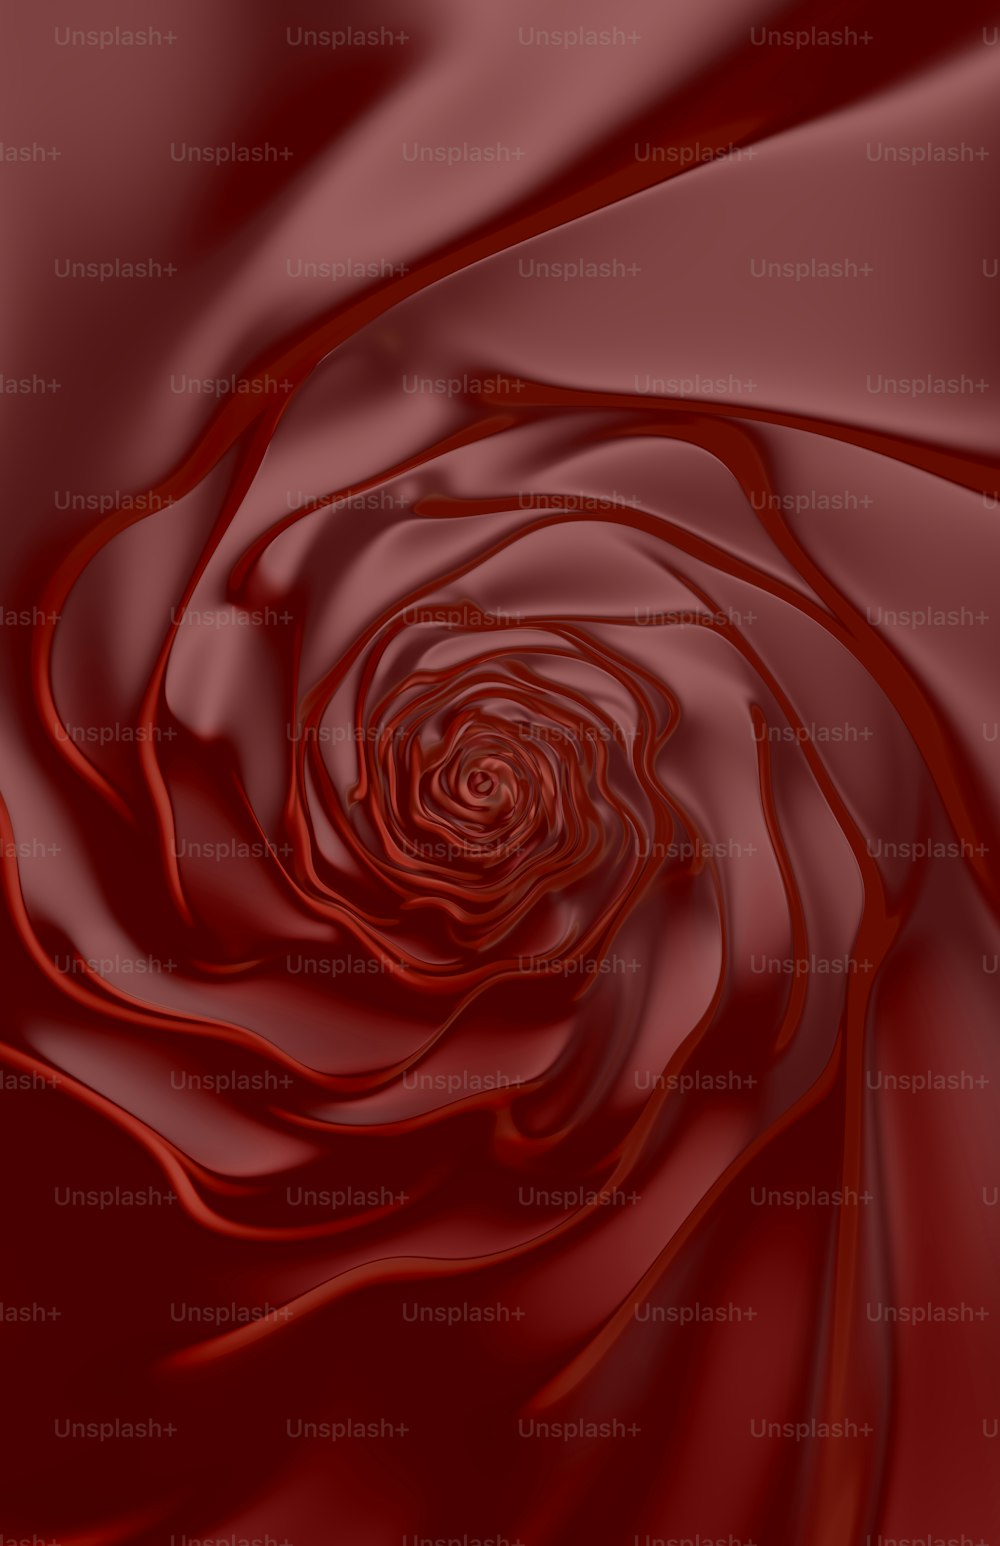 그림 한가운데에 있는 빨간 장미